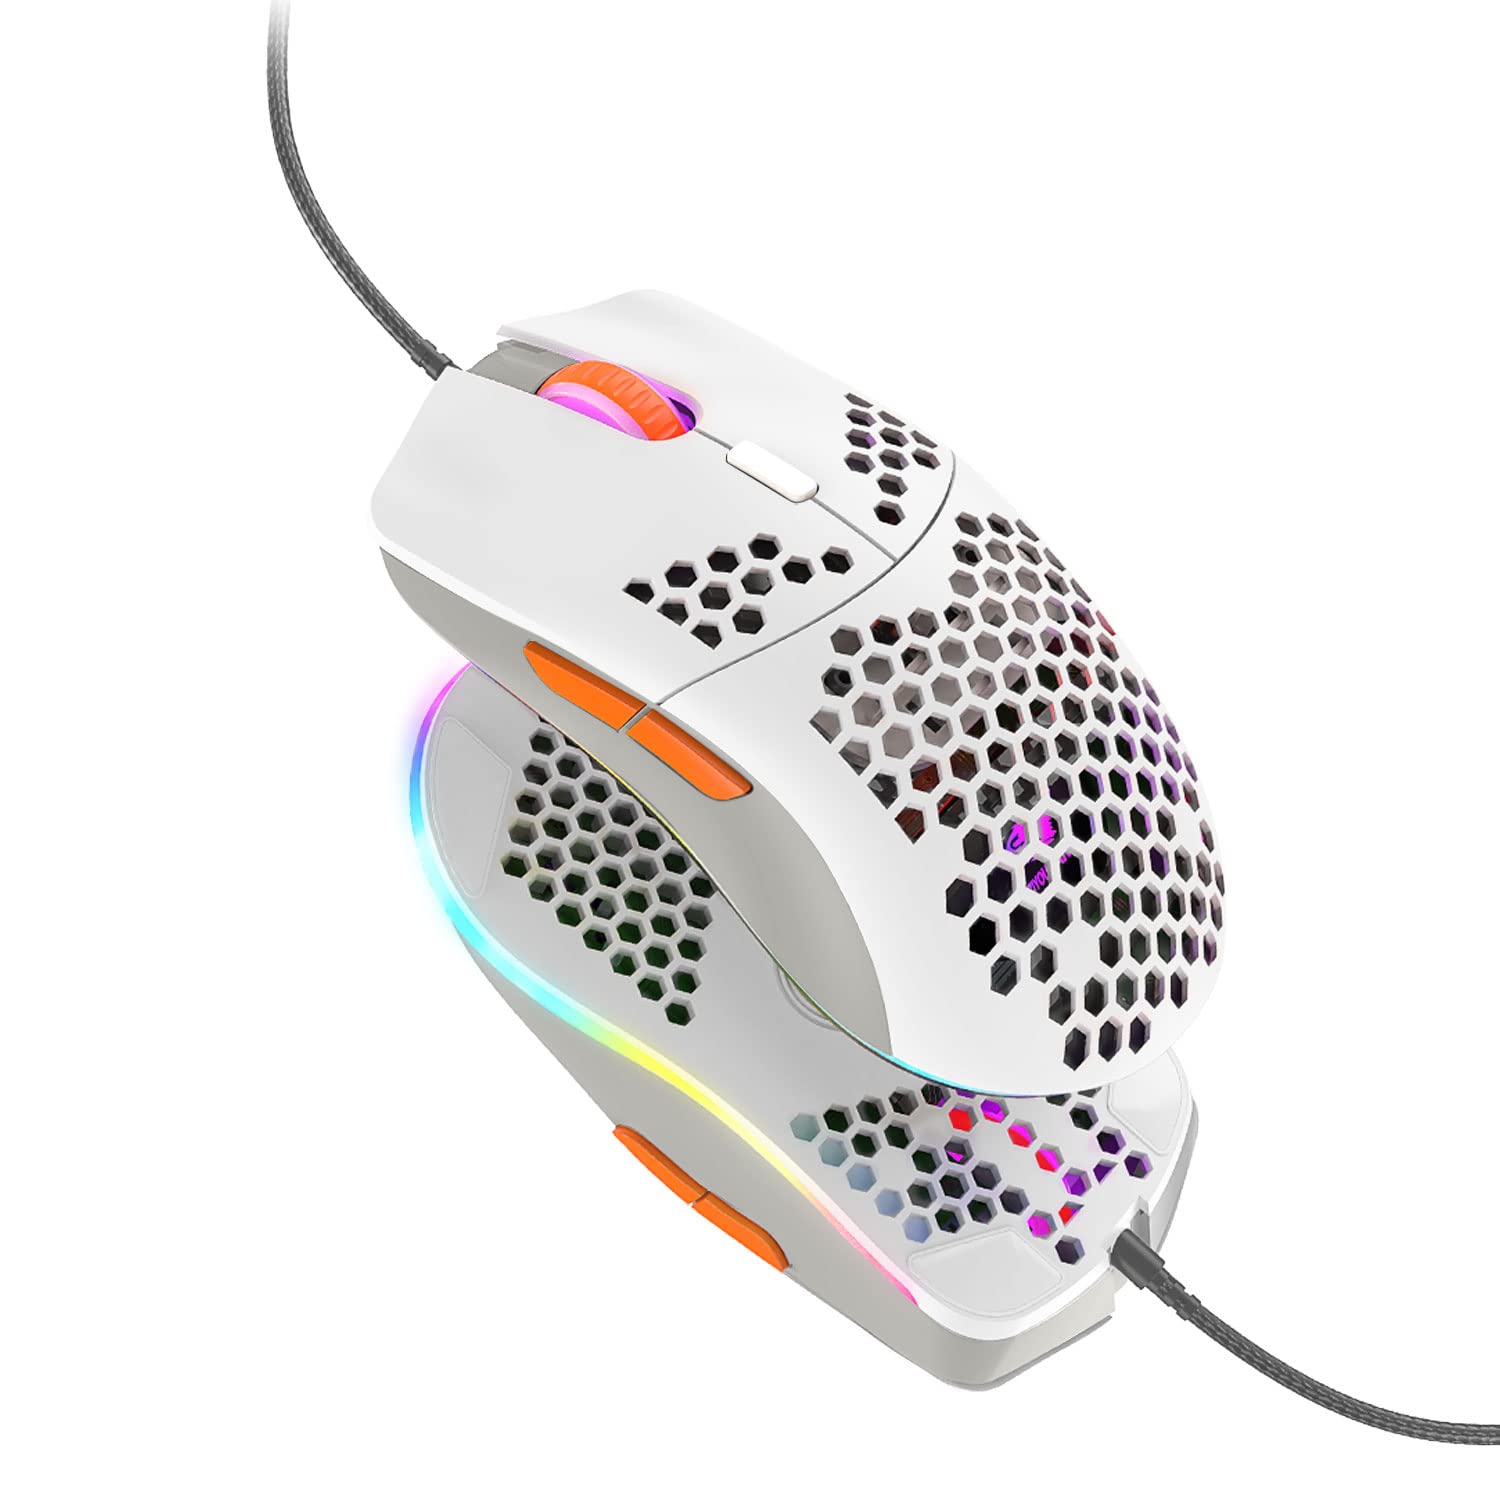 【送料無料】 A.JAZZ M1ゲーミングマウス USB有線 プログラマブルドライバー ハニカムデザイン 超軽量65g 6400DPI 6段調節可能 マウス メカニカルマウス - エルゴノミクス 光学式RGB 6色LEDライト ハードウェアマクロ対応 Pixart Paw3 325 PC PS4 対応 蜜蜂バージョン